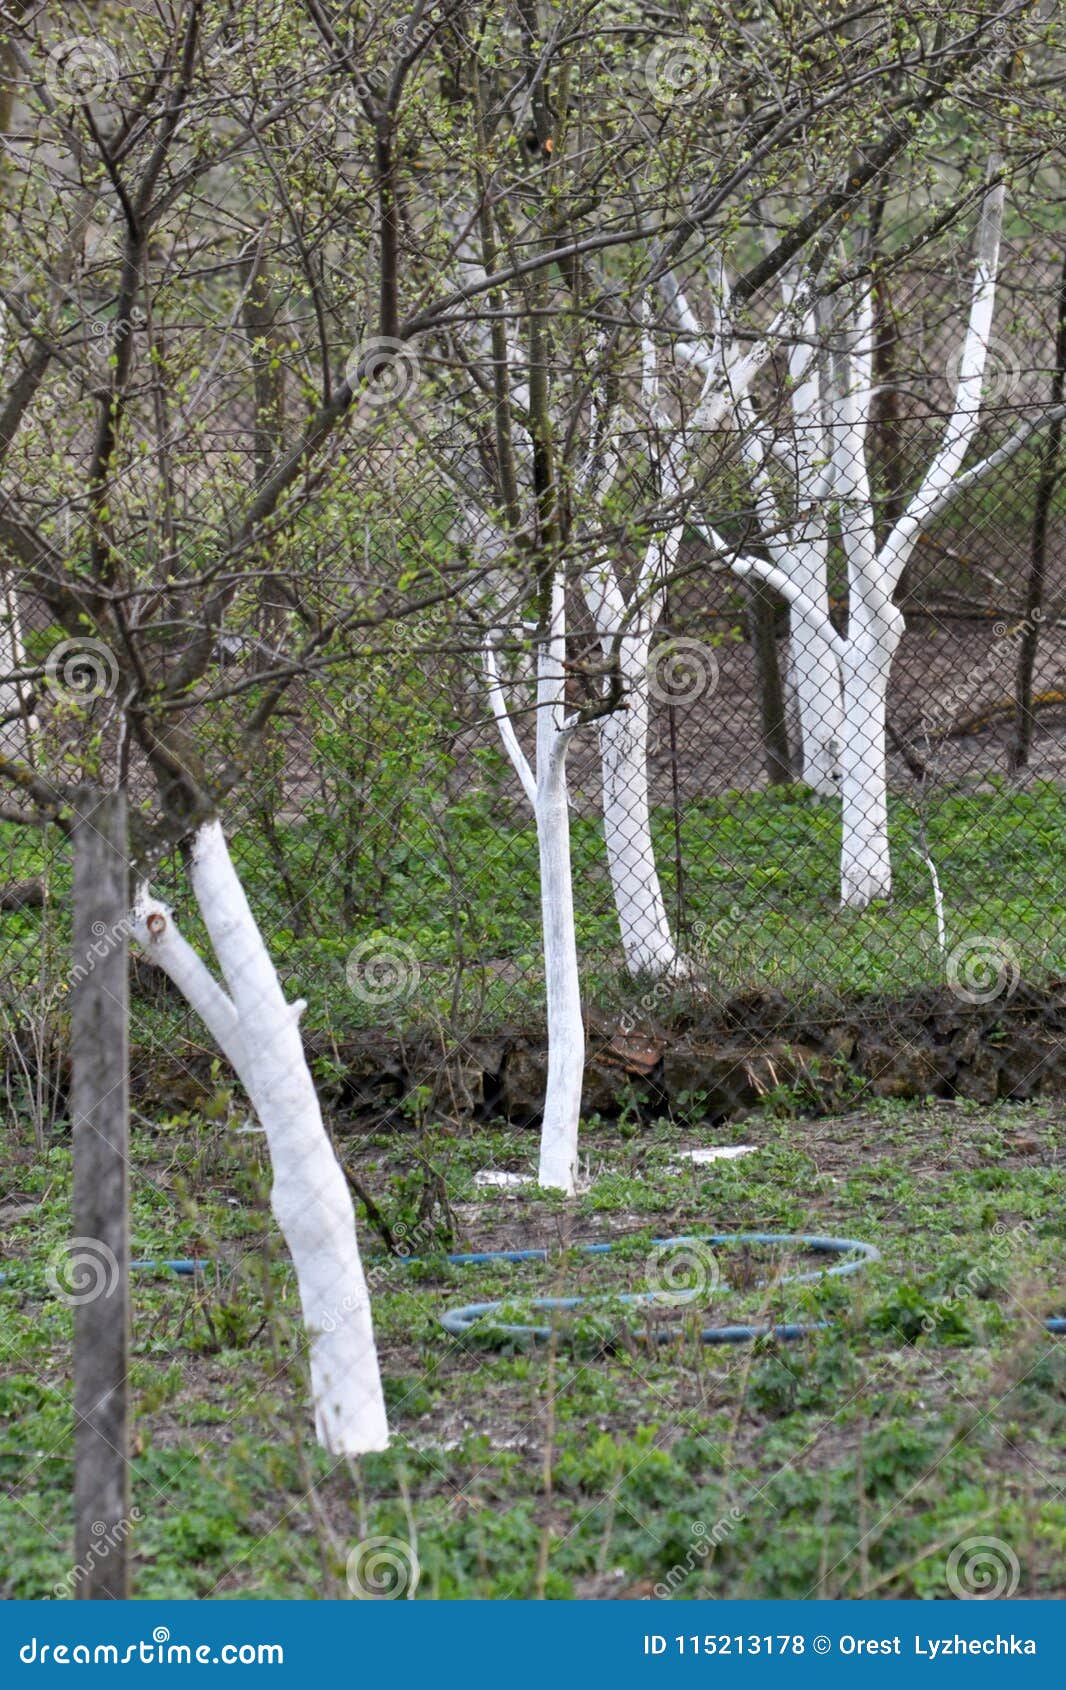 Belo pranje sadnega drevesa